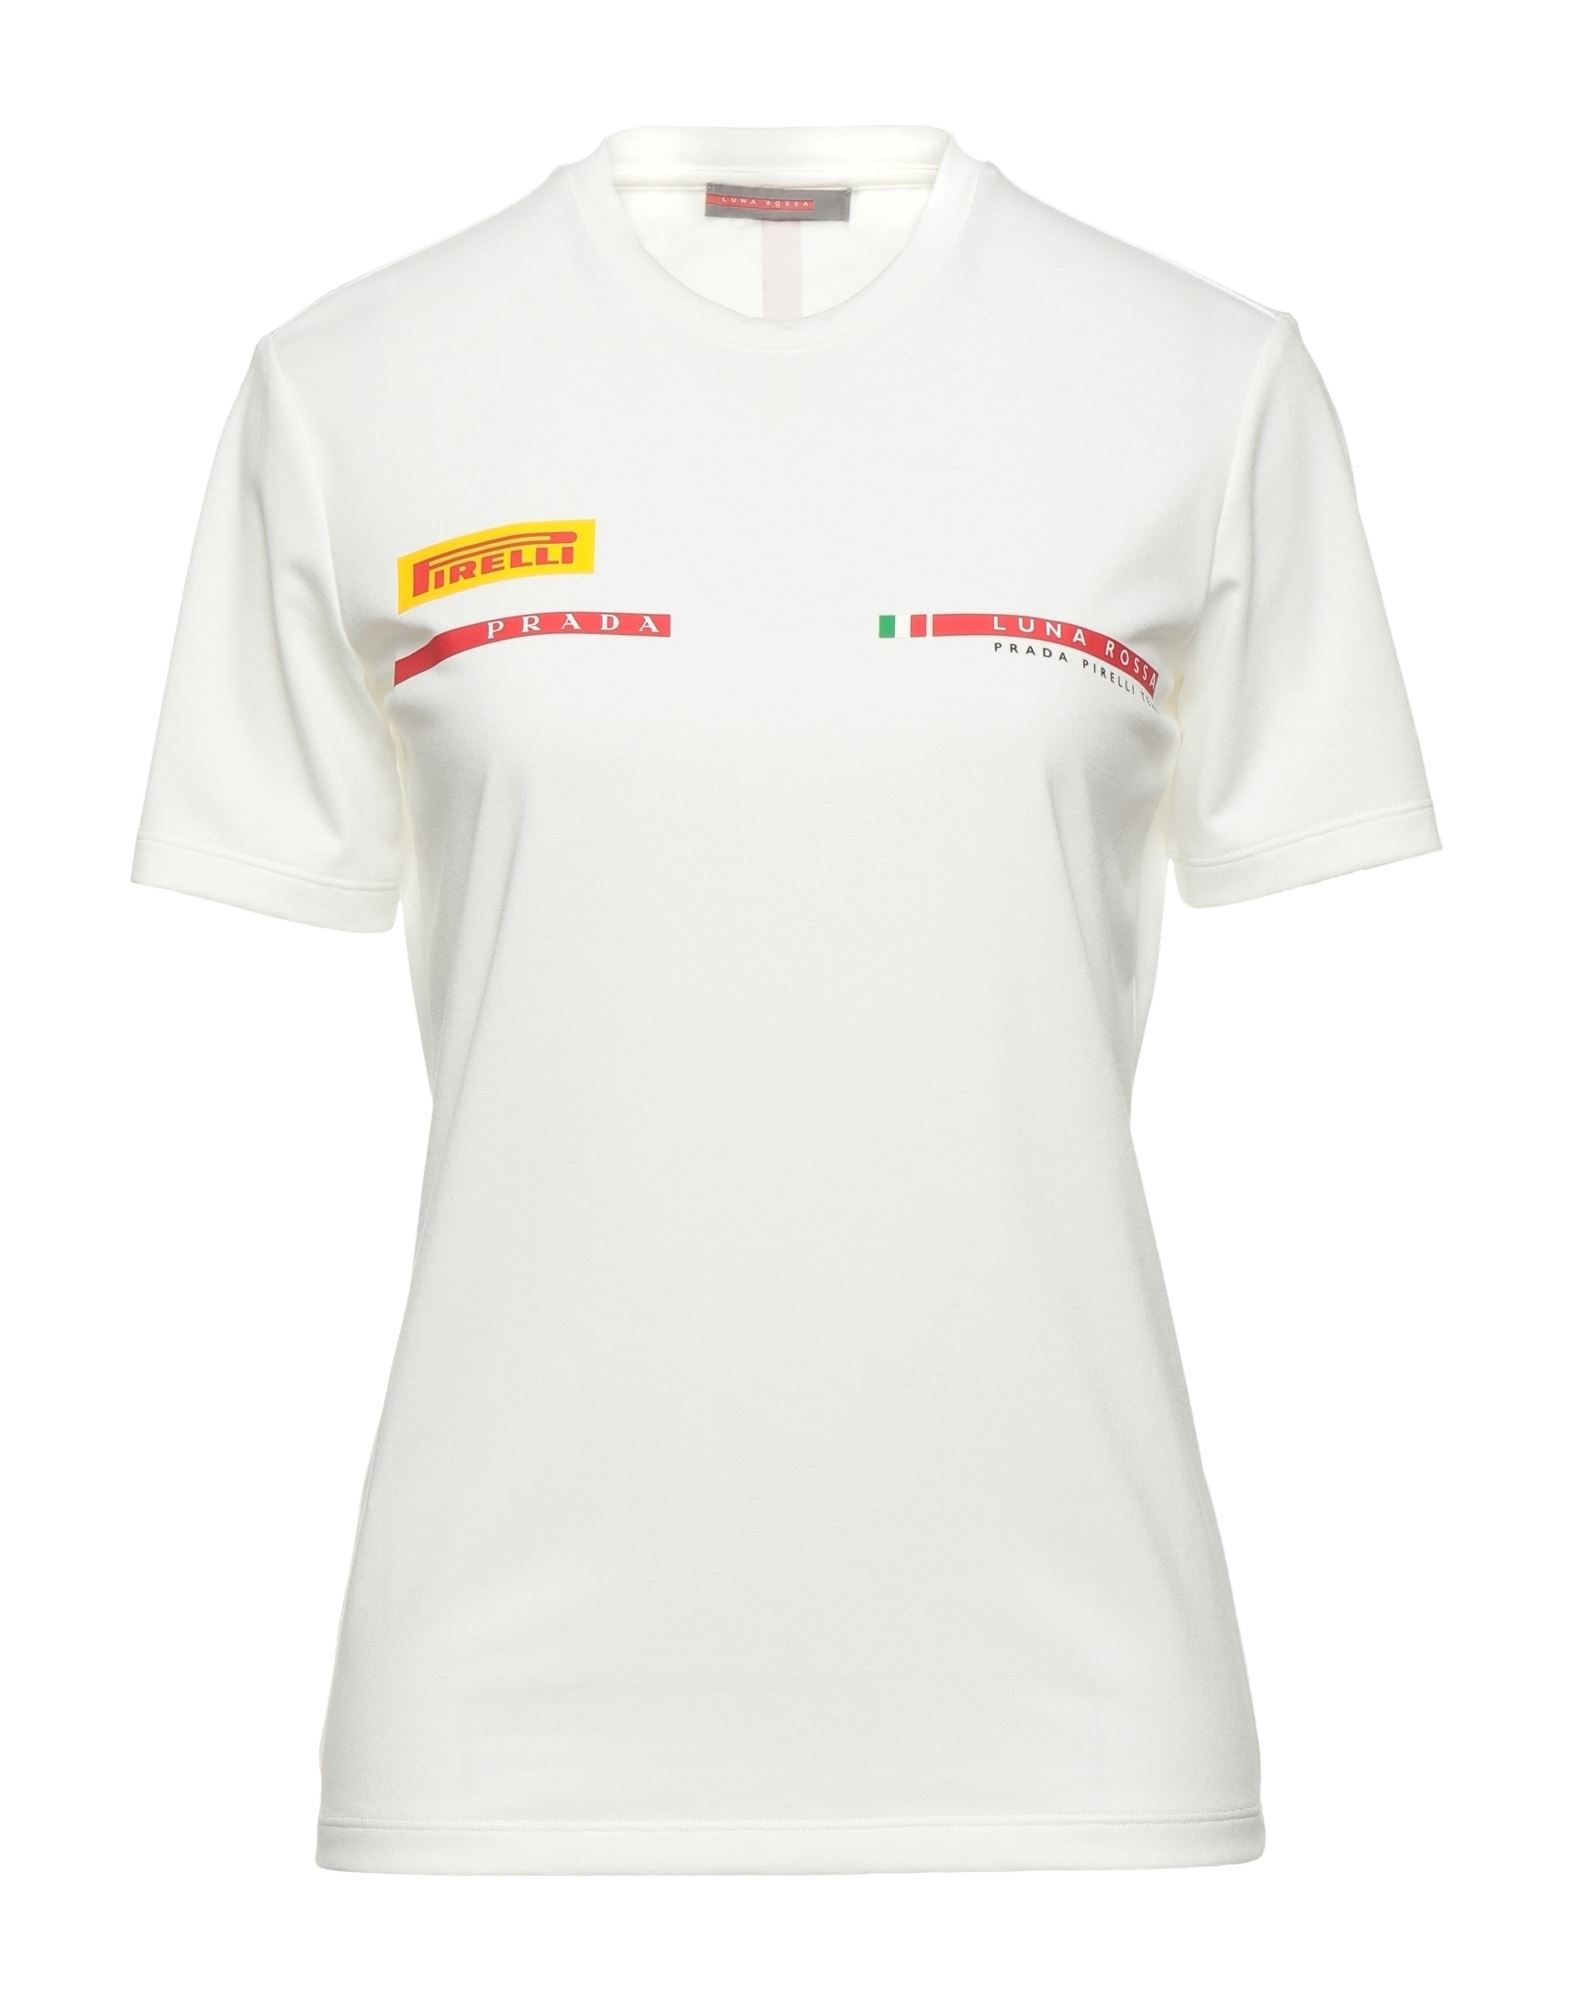 Prada Luna Rossa T-shirts In White